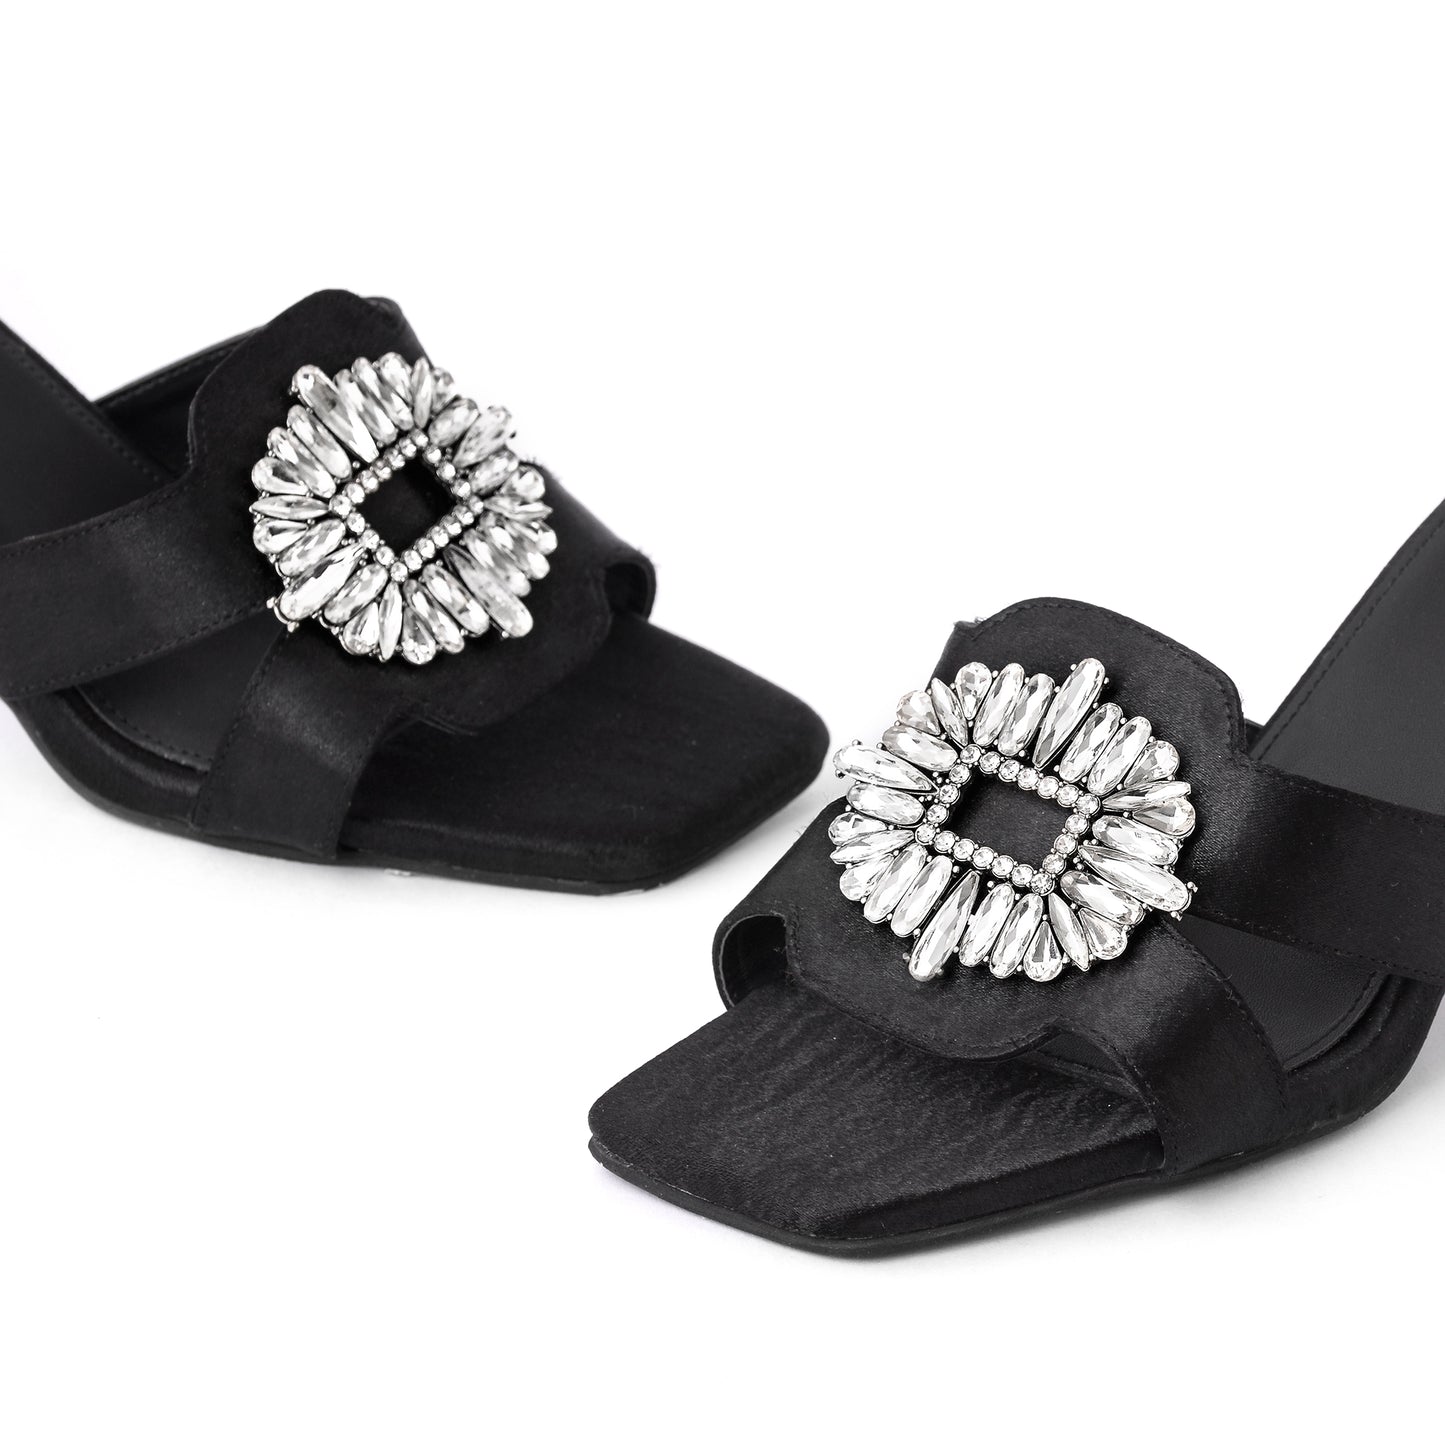 Black crystal Embellished Heels